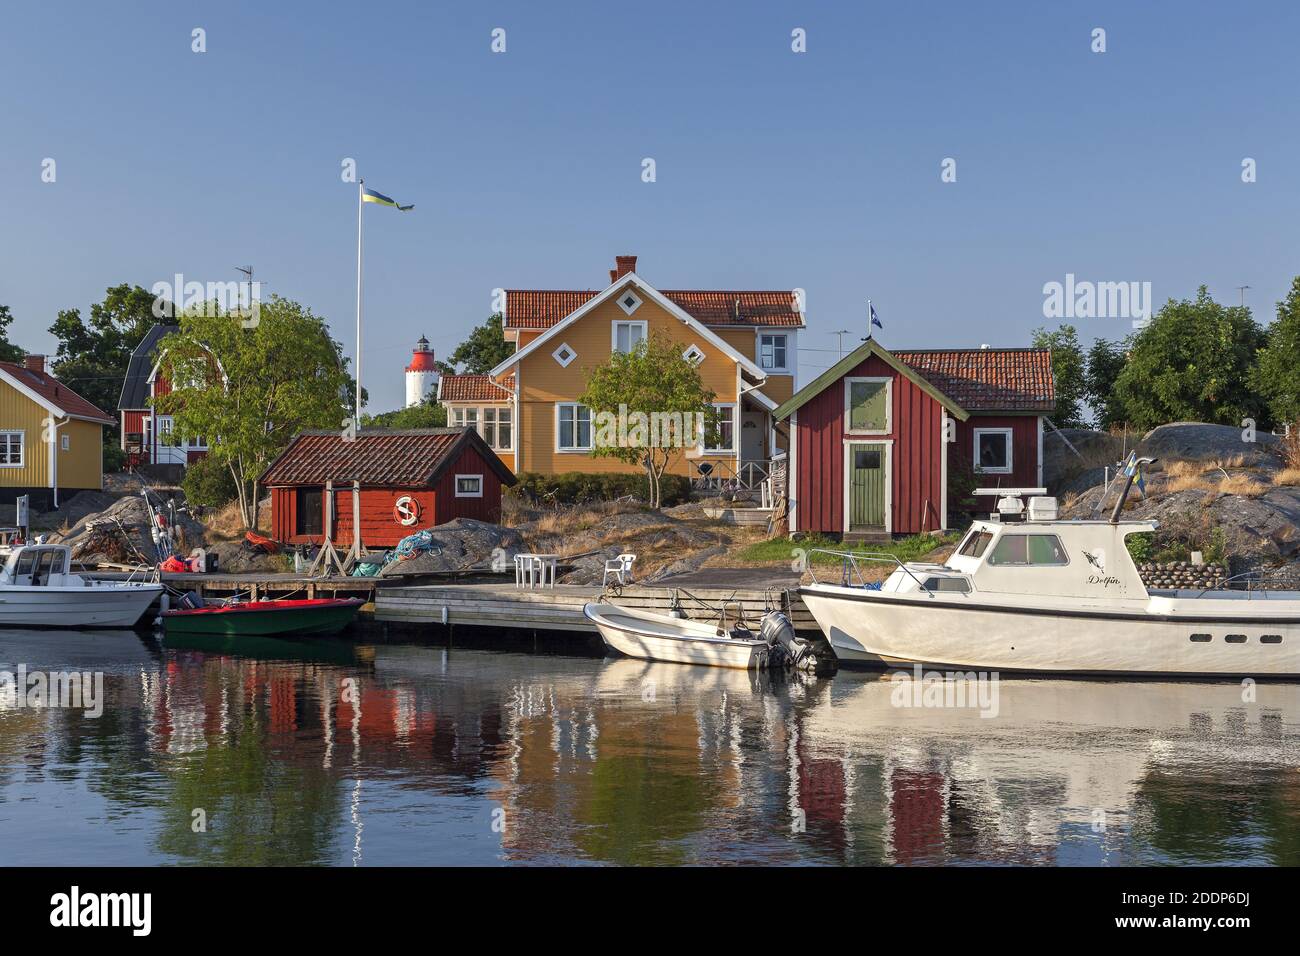 Géographie / Voyage, Suède, Stockholm laen, Nynäshamn, maison jaune sur le port Vaesterhamn poste li, droits-supplémentaires-dégagement-Info-non-disponible Banque D'Images